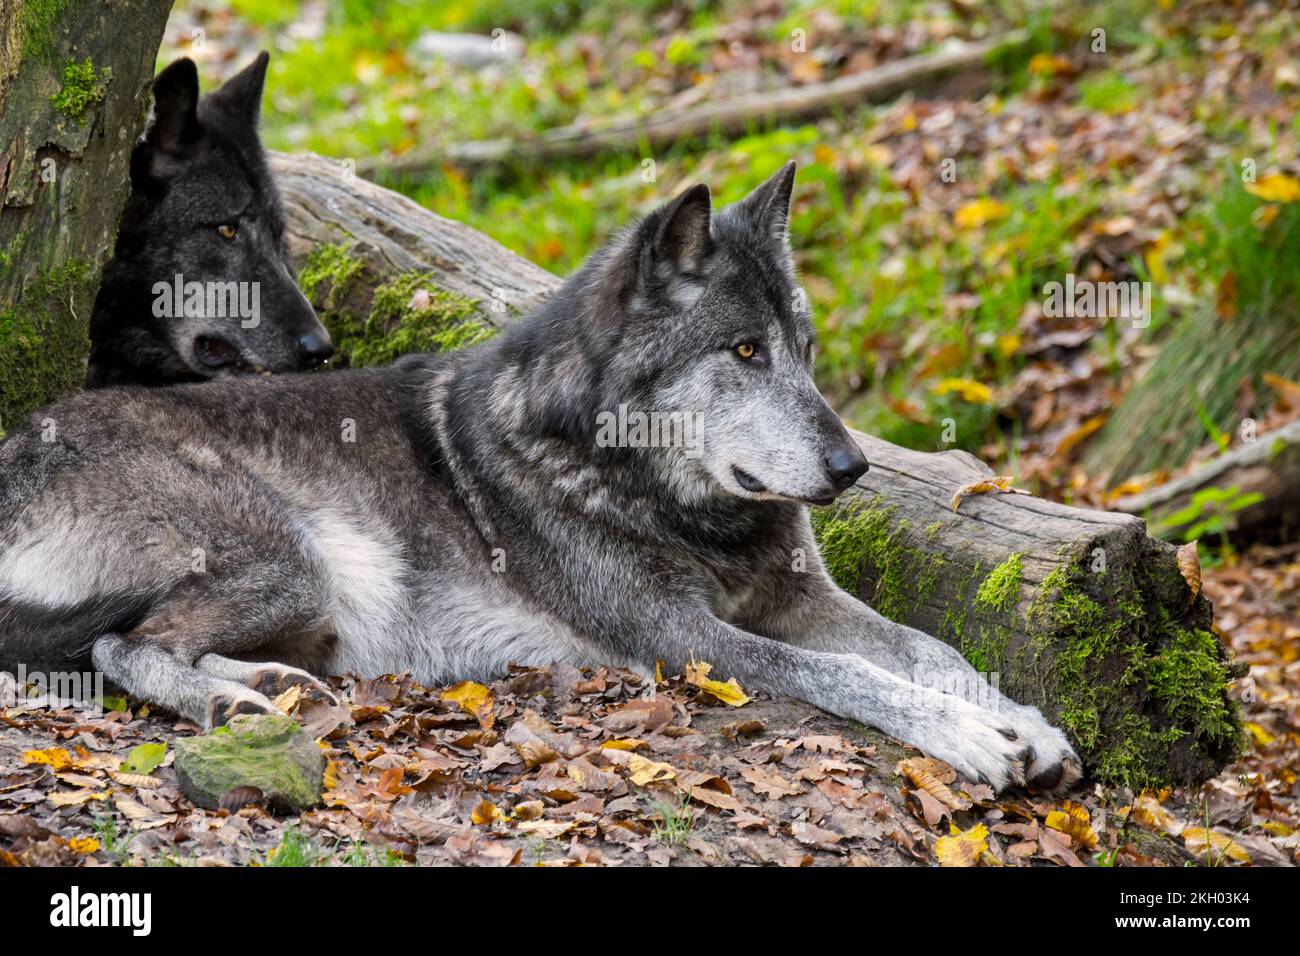 Dos lobos del Noroeste / Lobo del Valle Mackenzie / Lobos de madera canadienses / de Alaska (Canis lupus occidentalis) descansando en el bosque Foto de stock